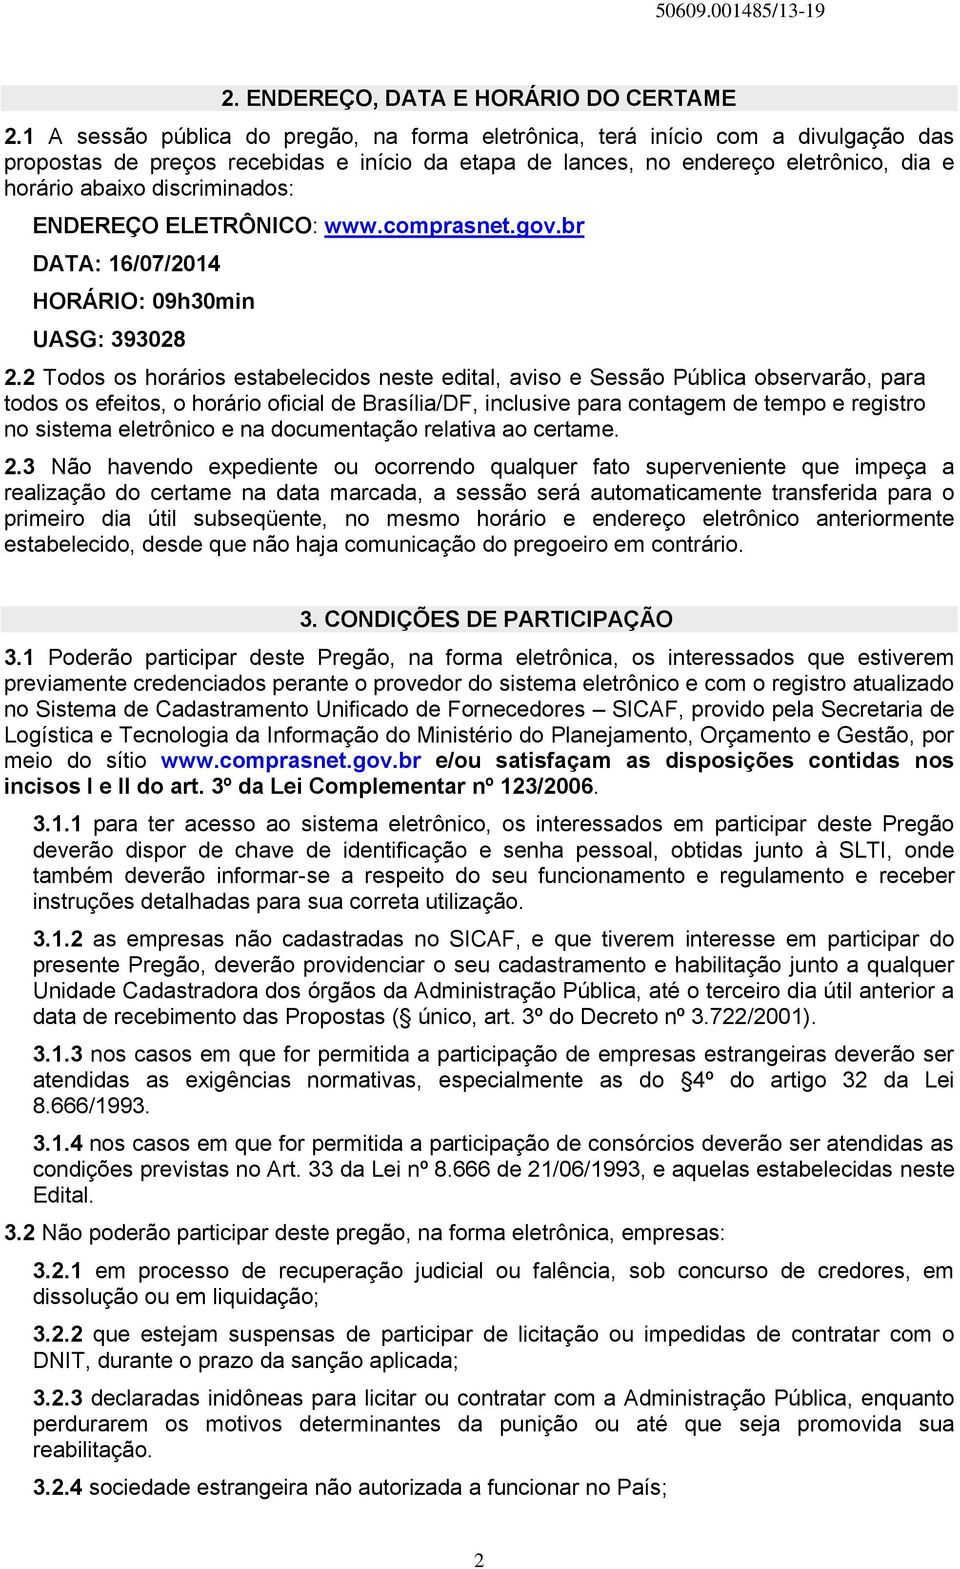 discriminados: ENDEREÇO ELETRÔNICO: www.comprasnet.gov.br DATA: 16/07/2014 HORÁRIO: 09h30min UASG: 393028 2.